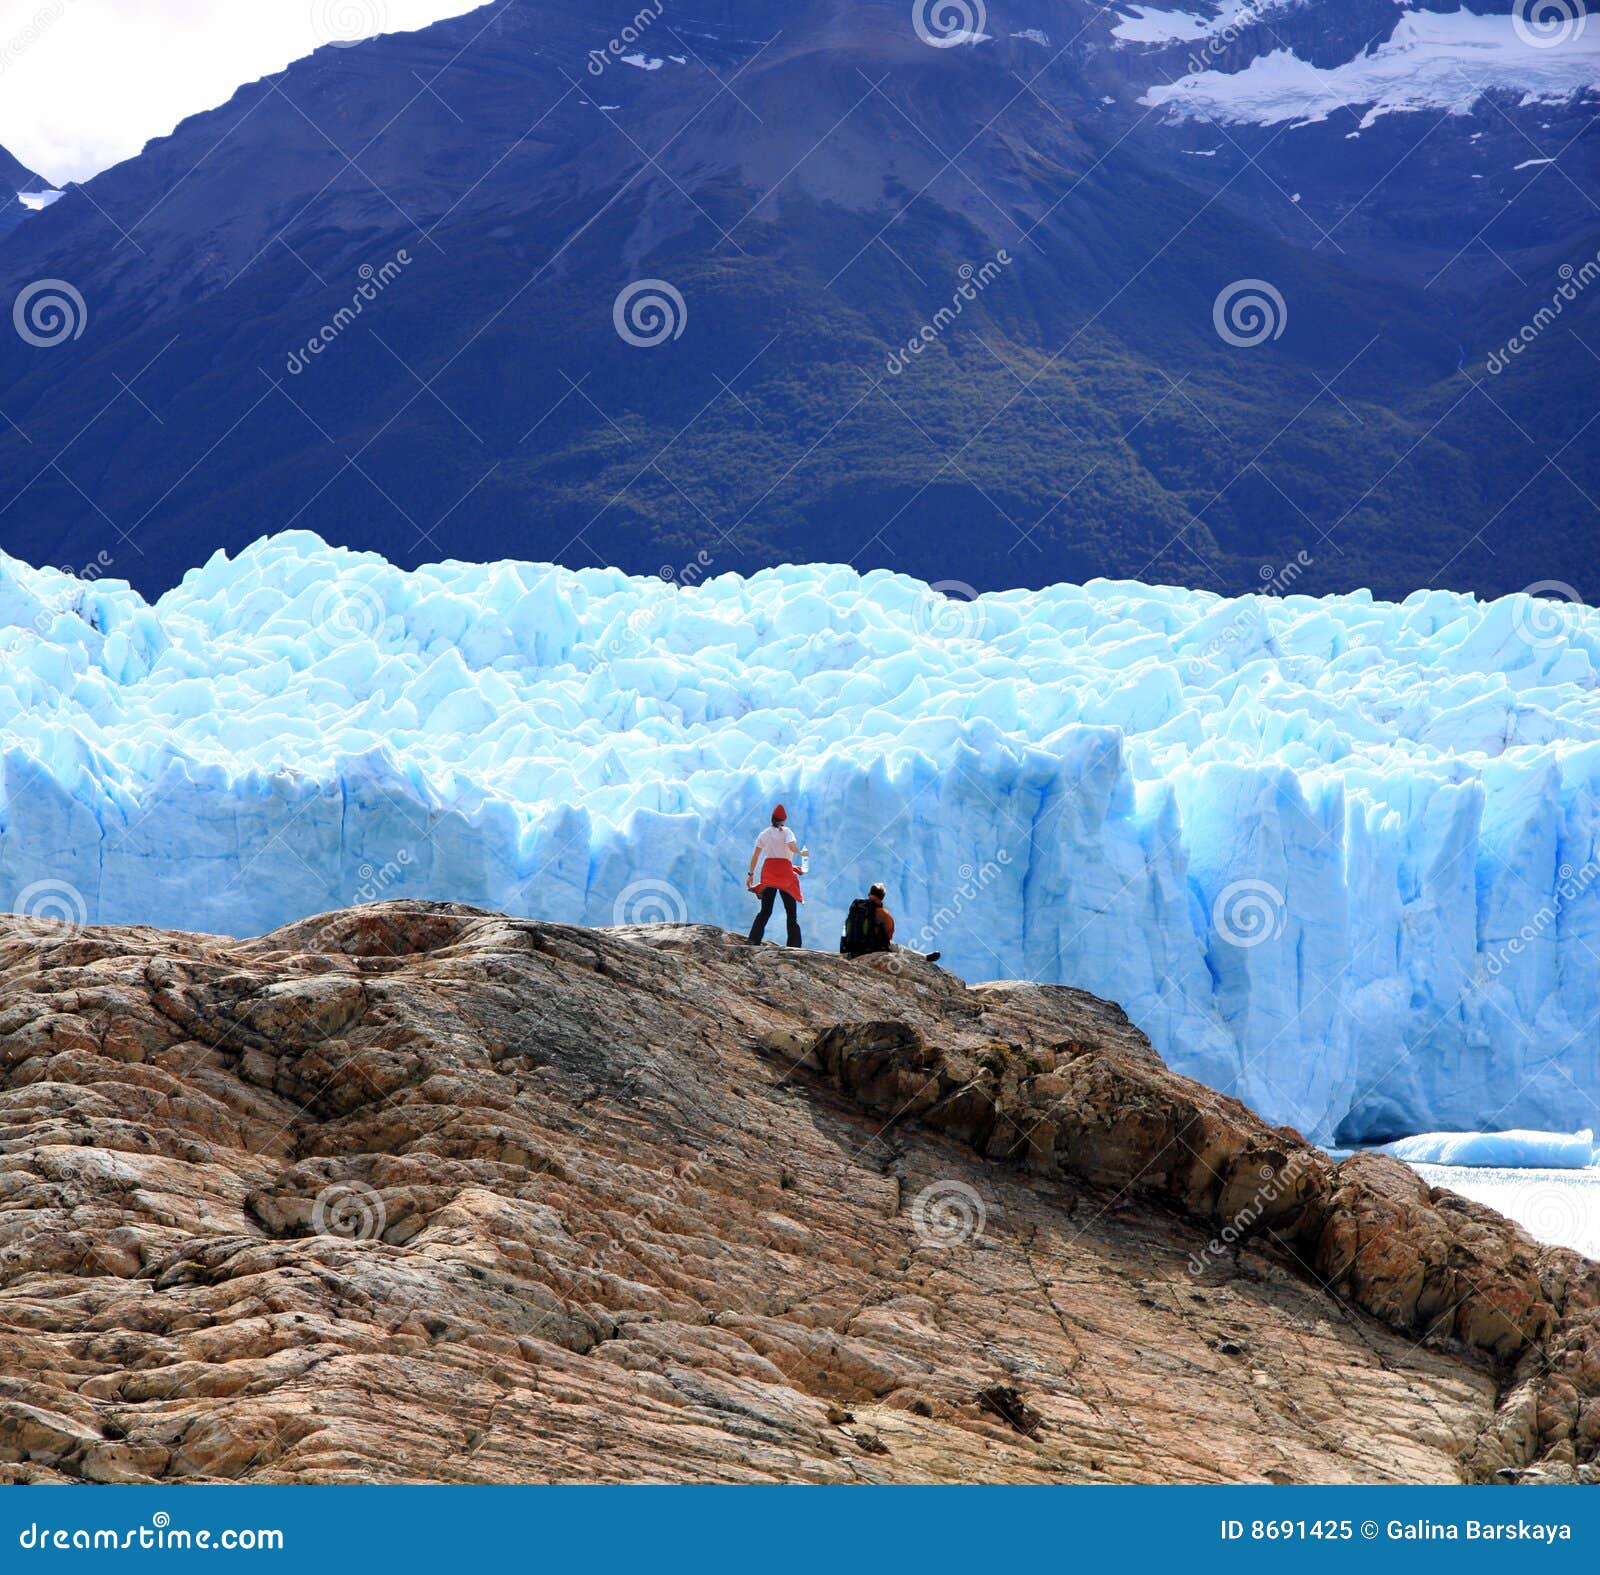 Geleira de Perito Moreno, Argentina. Acople a vista da geleira de Perito Moreno, Patagonia, Argentina